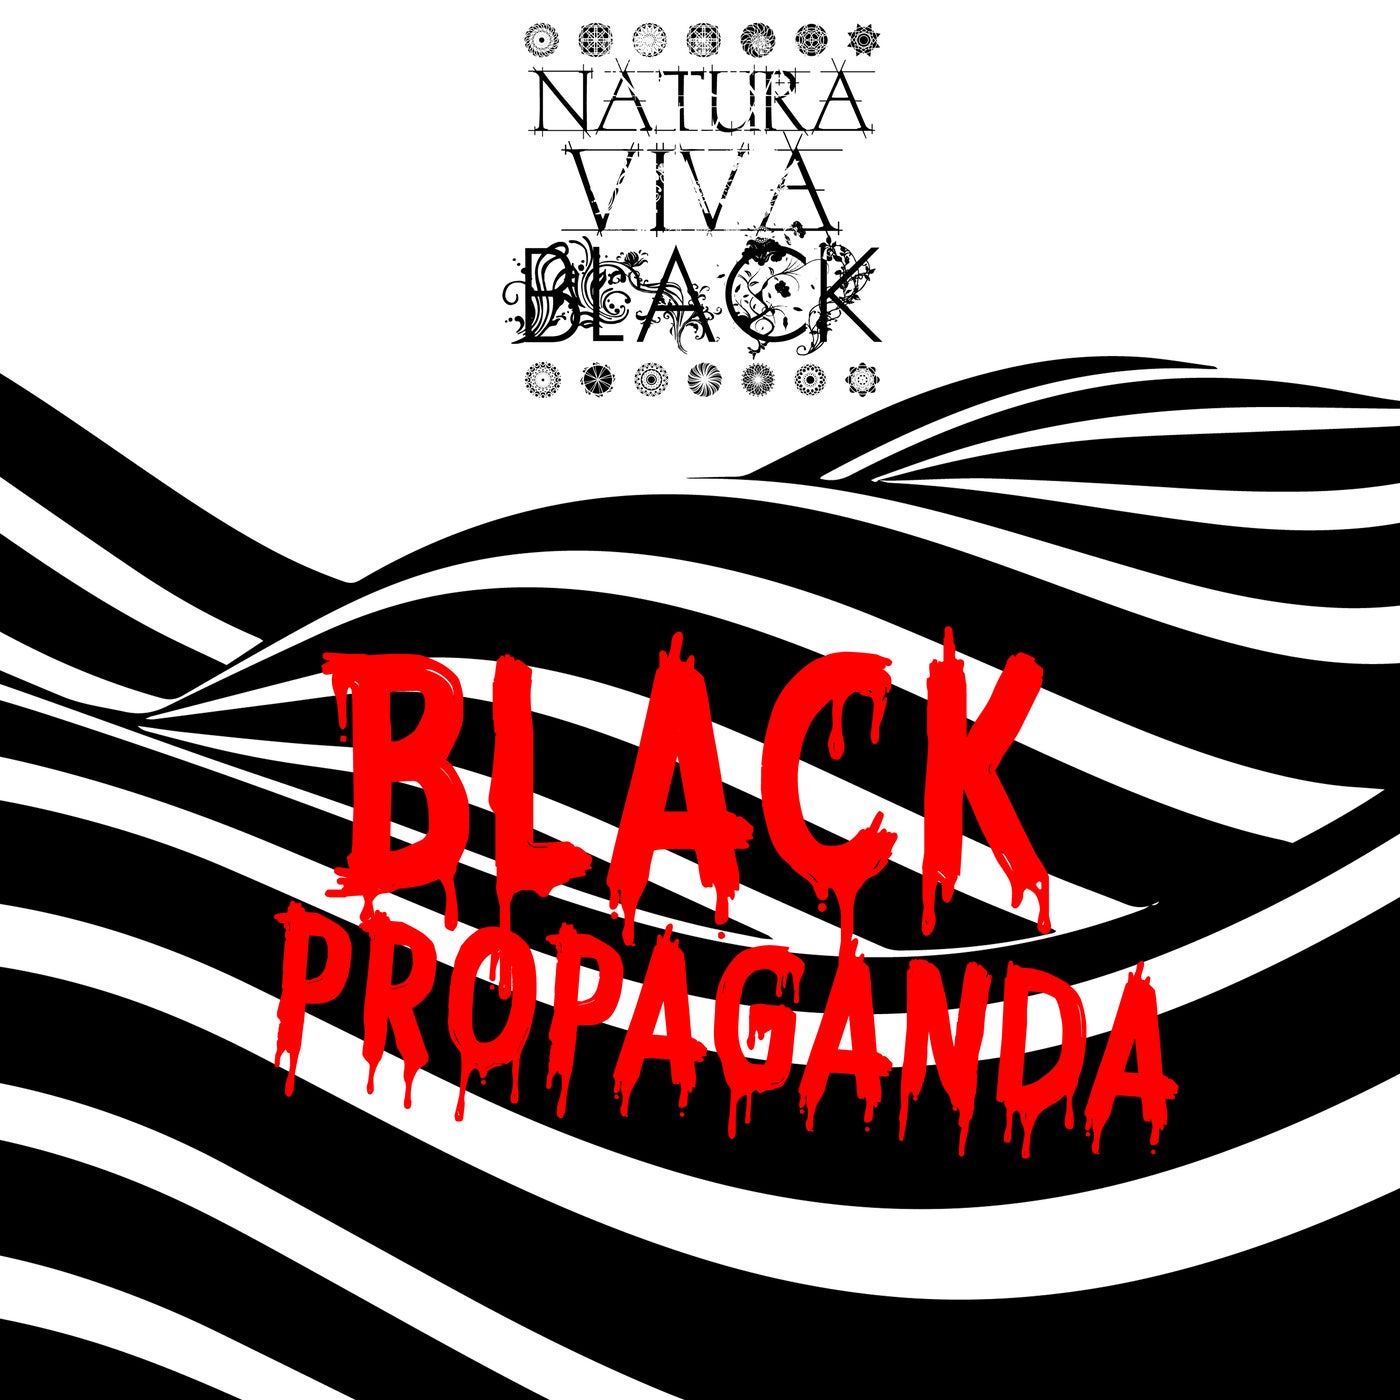 Black Propaganda